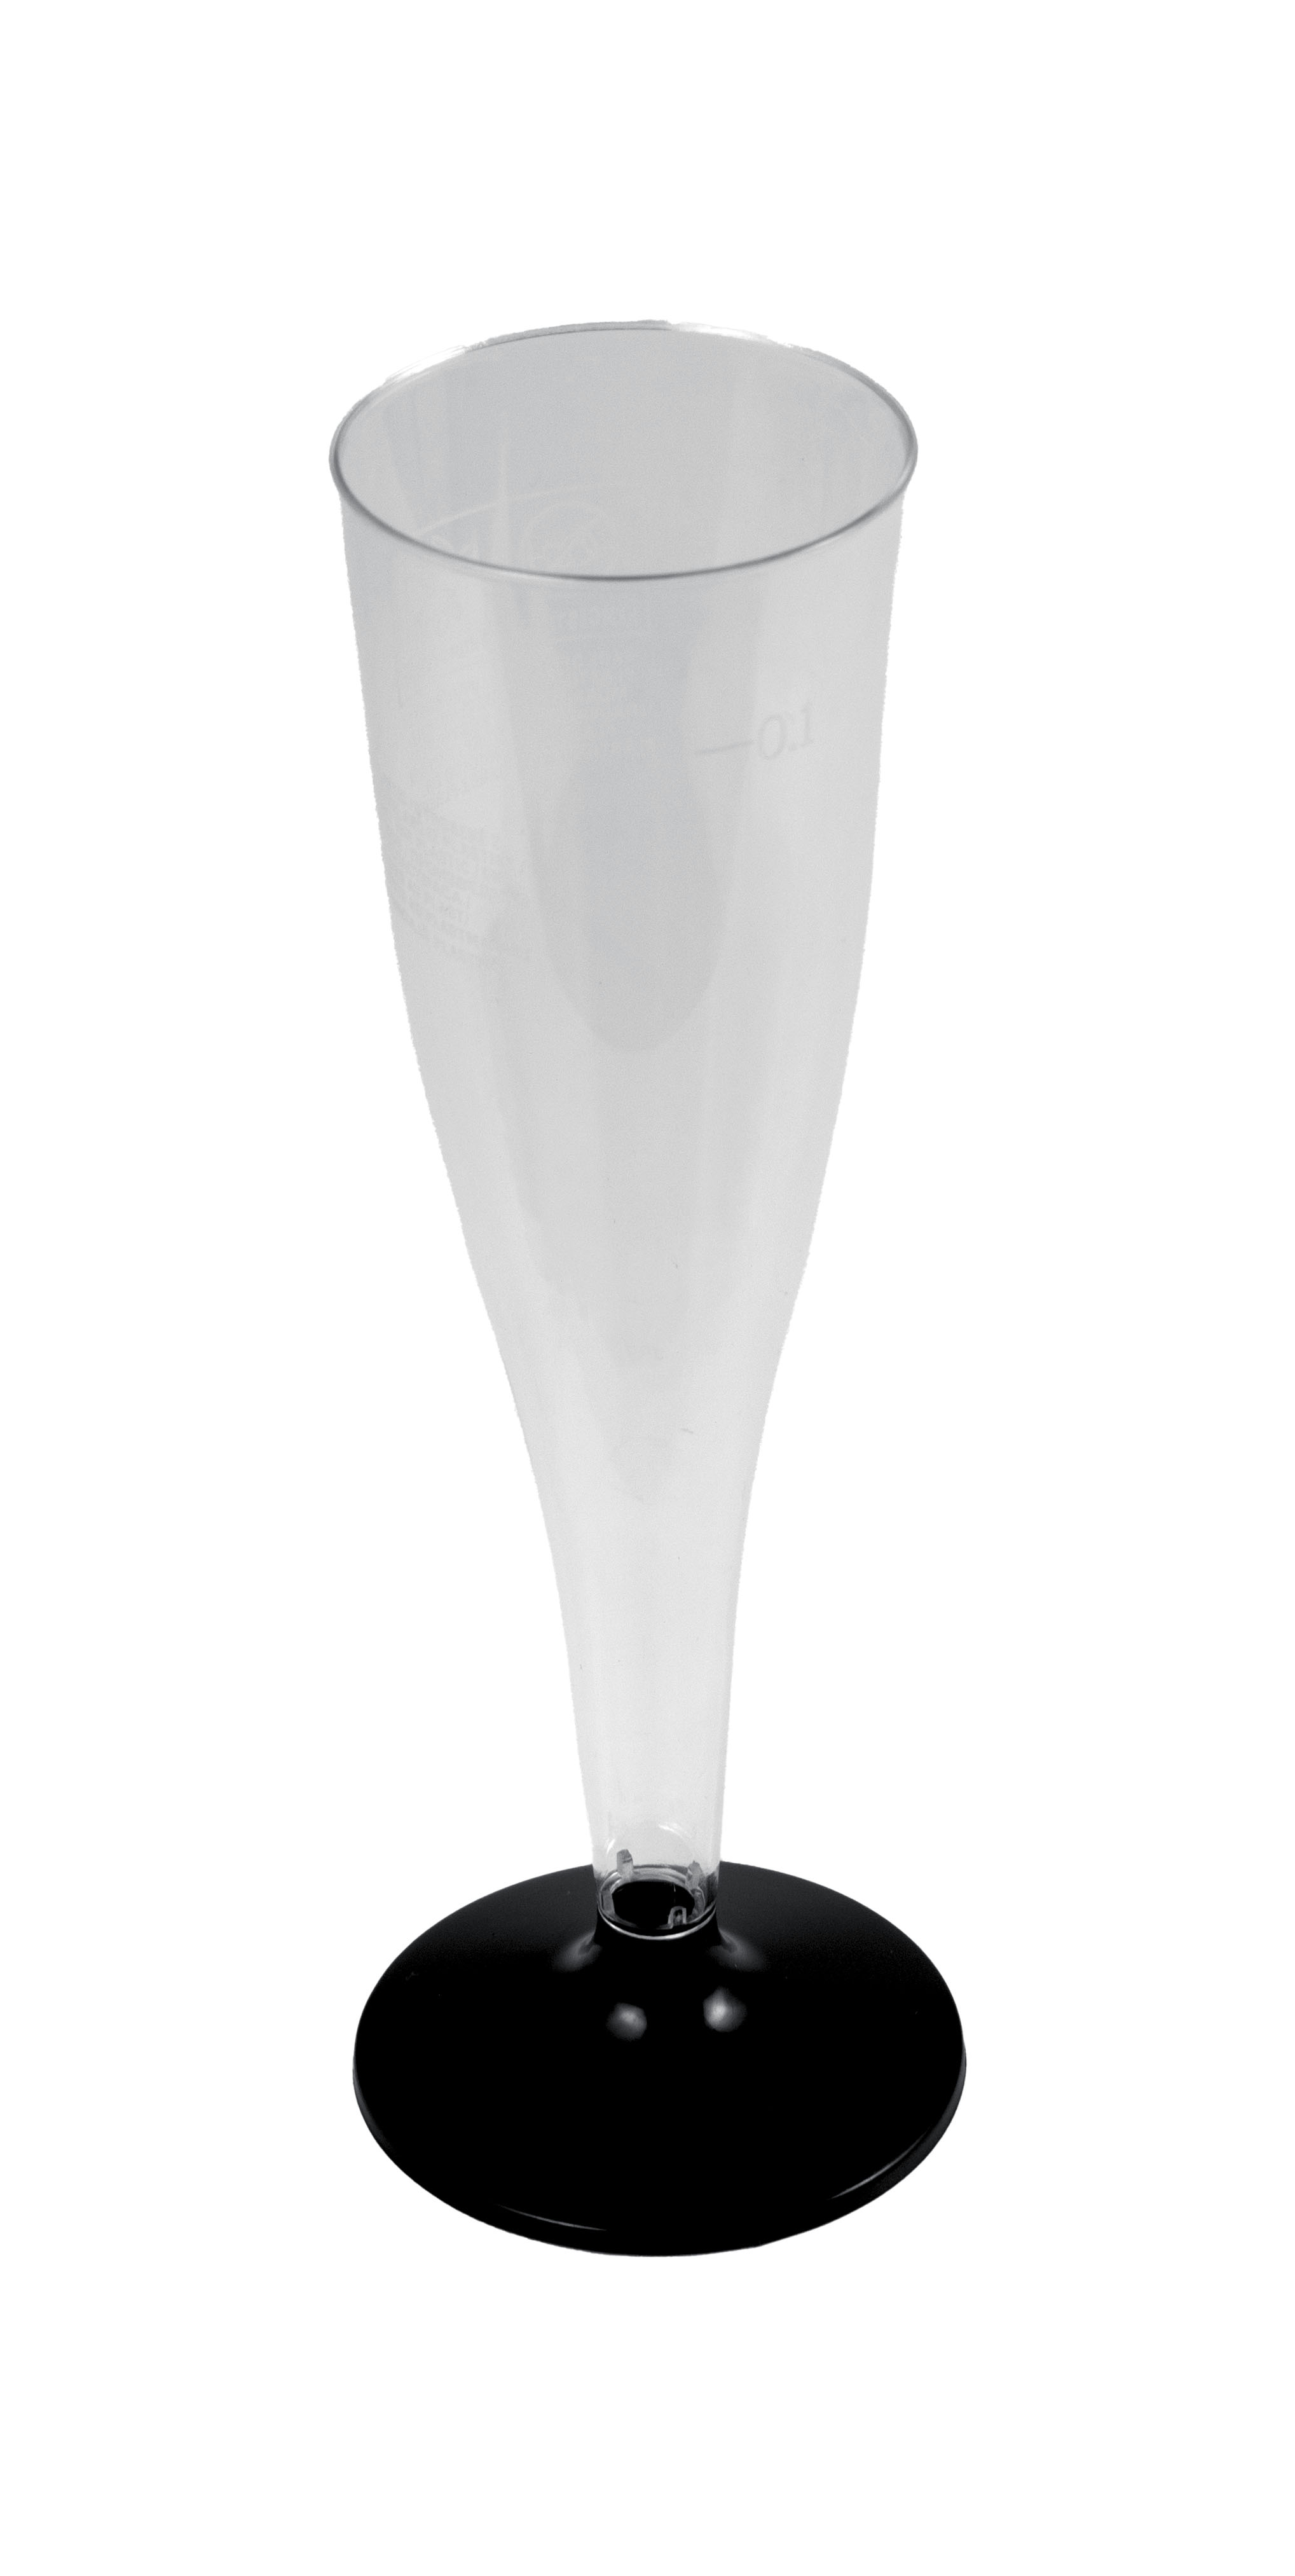 Sektglas PS, zweiteilig mit schwarzem Fuß, 100 ml, Ø 65 mm